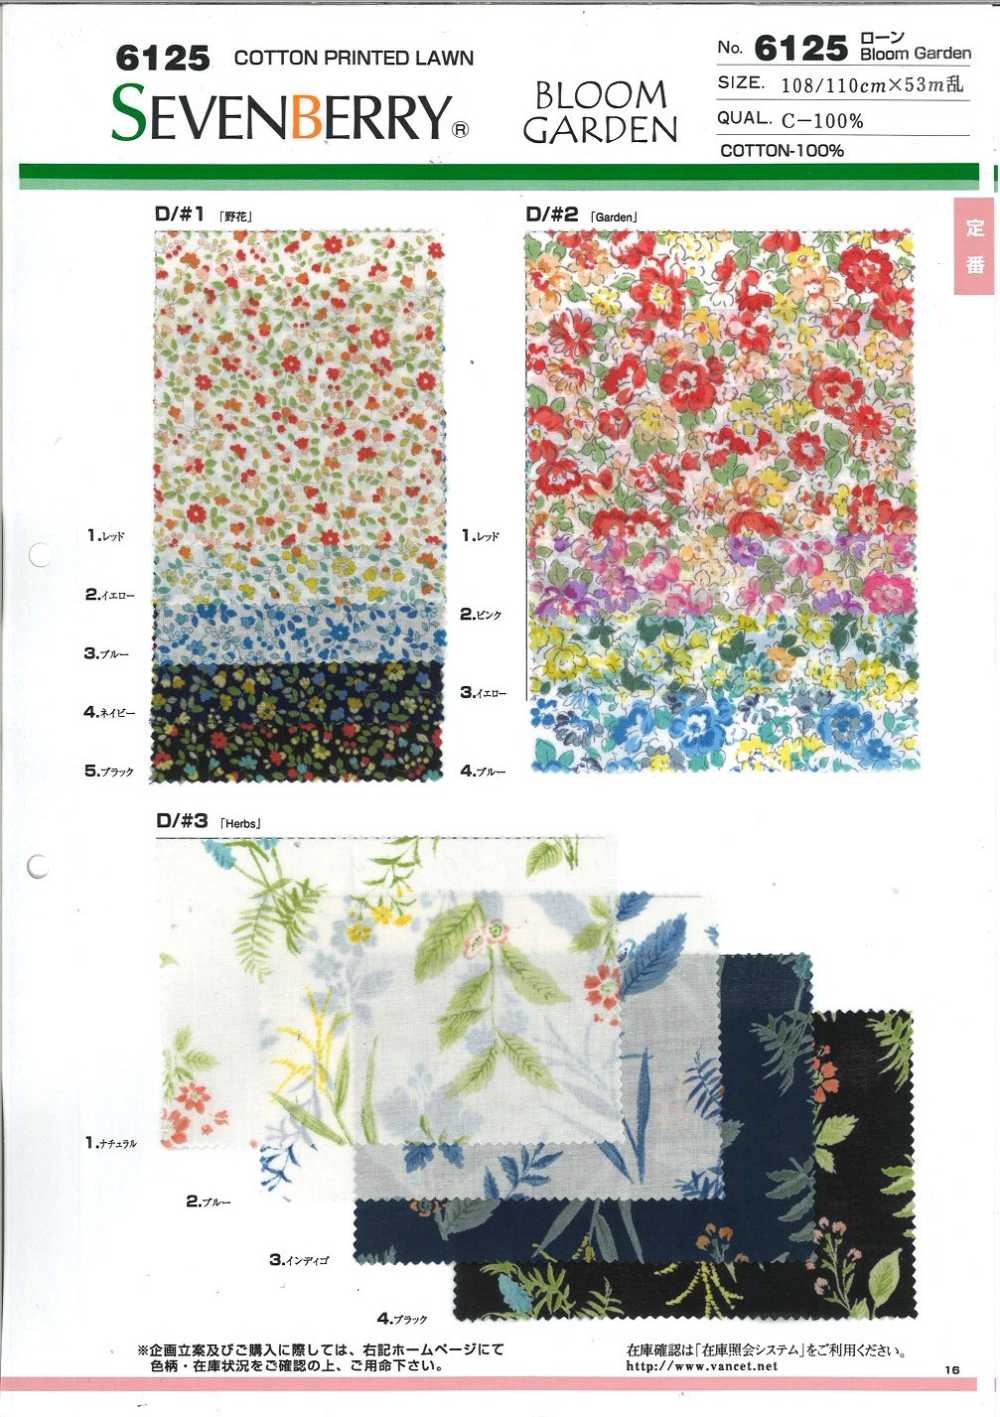 6125 60 Faden Rasenblütengarten[Textilgewebe] VANCET